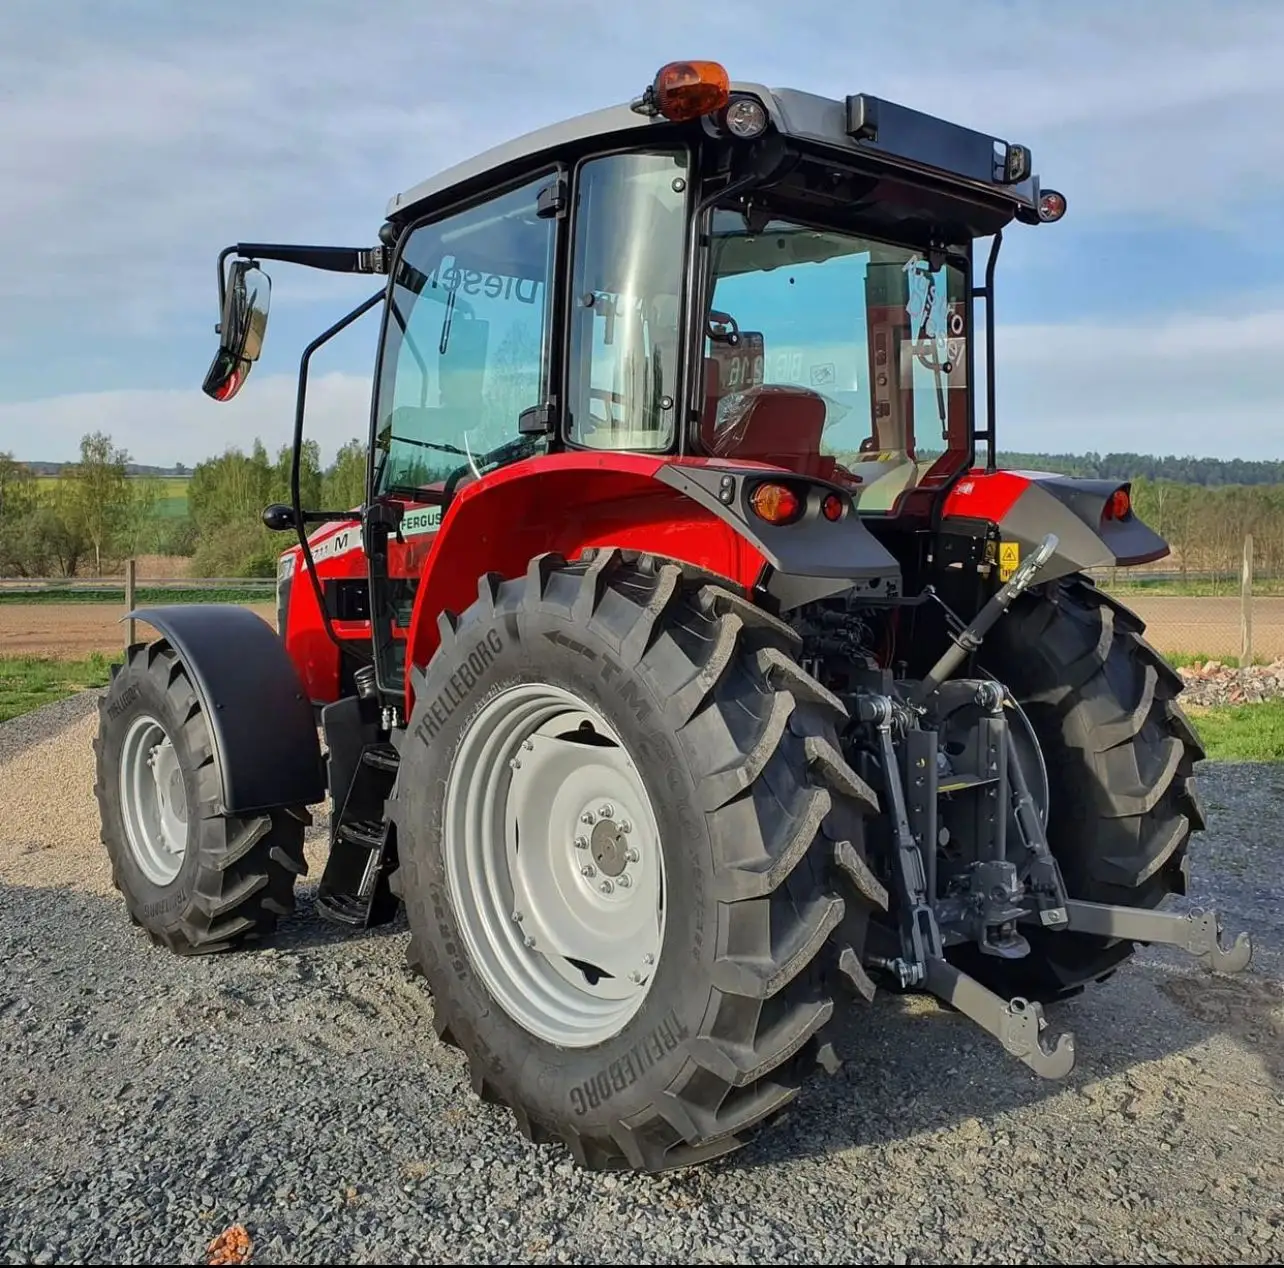 Massey Ferguson Great Farm tracteurs à vendre pas cher Massey Ferguson tracteur 290 MF385 et MF 390 machine agricole tracteur agricole